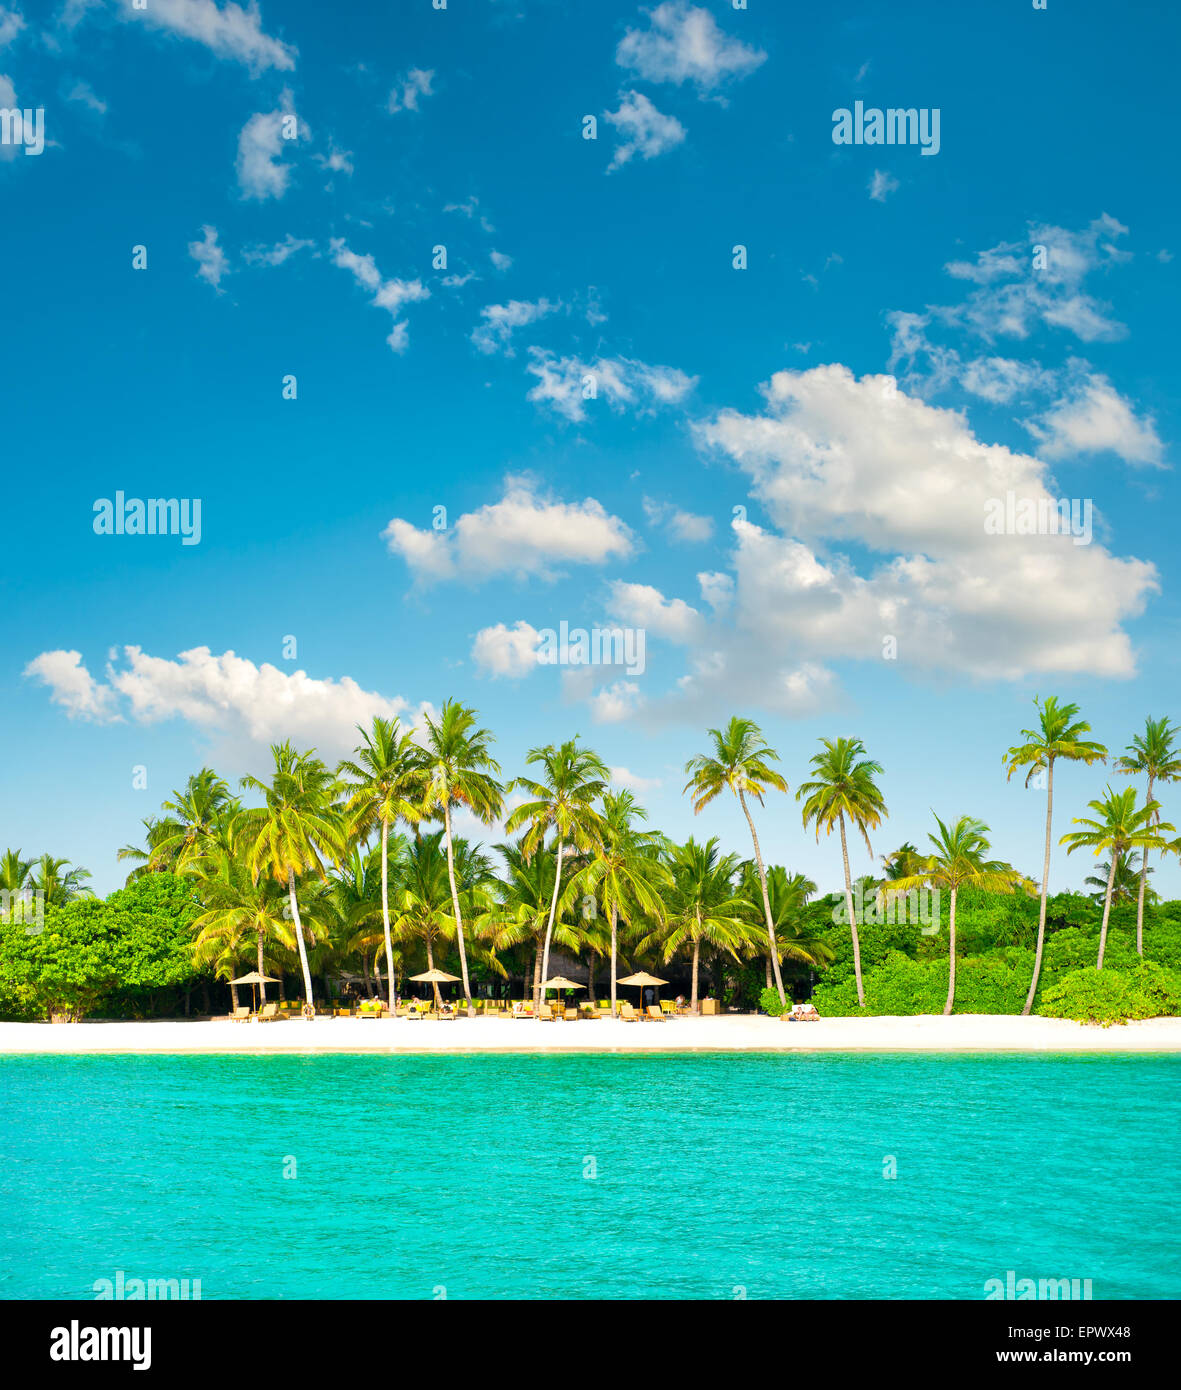 Plage de sable avec paysage nuageux ciel bleu. Île tropicale avec palmiers Banque D'Images